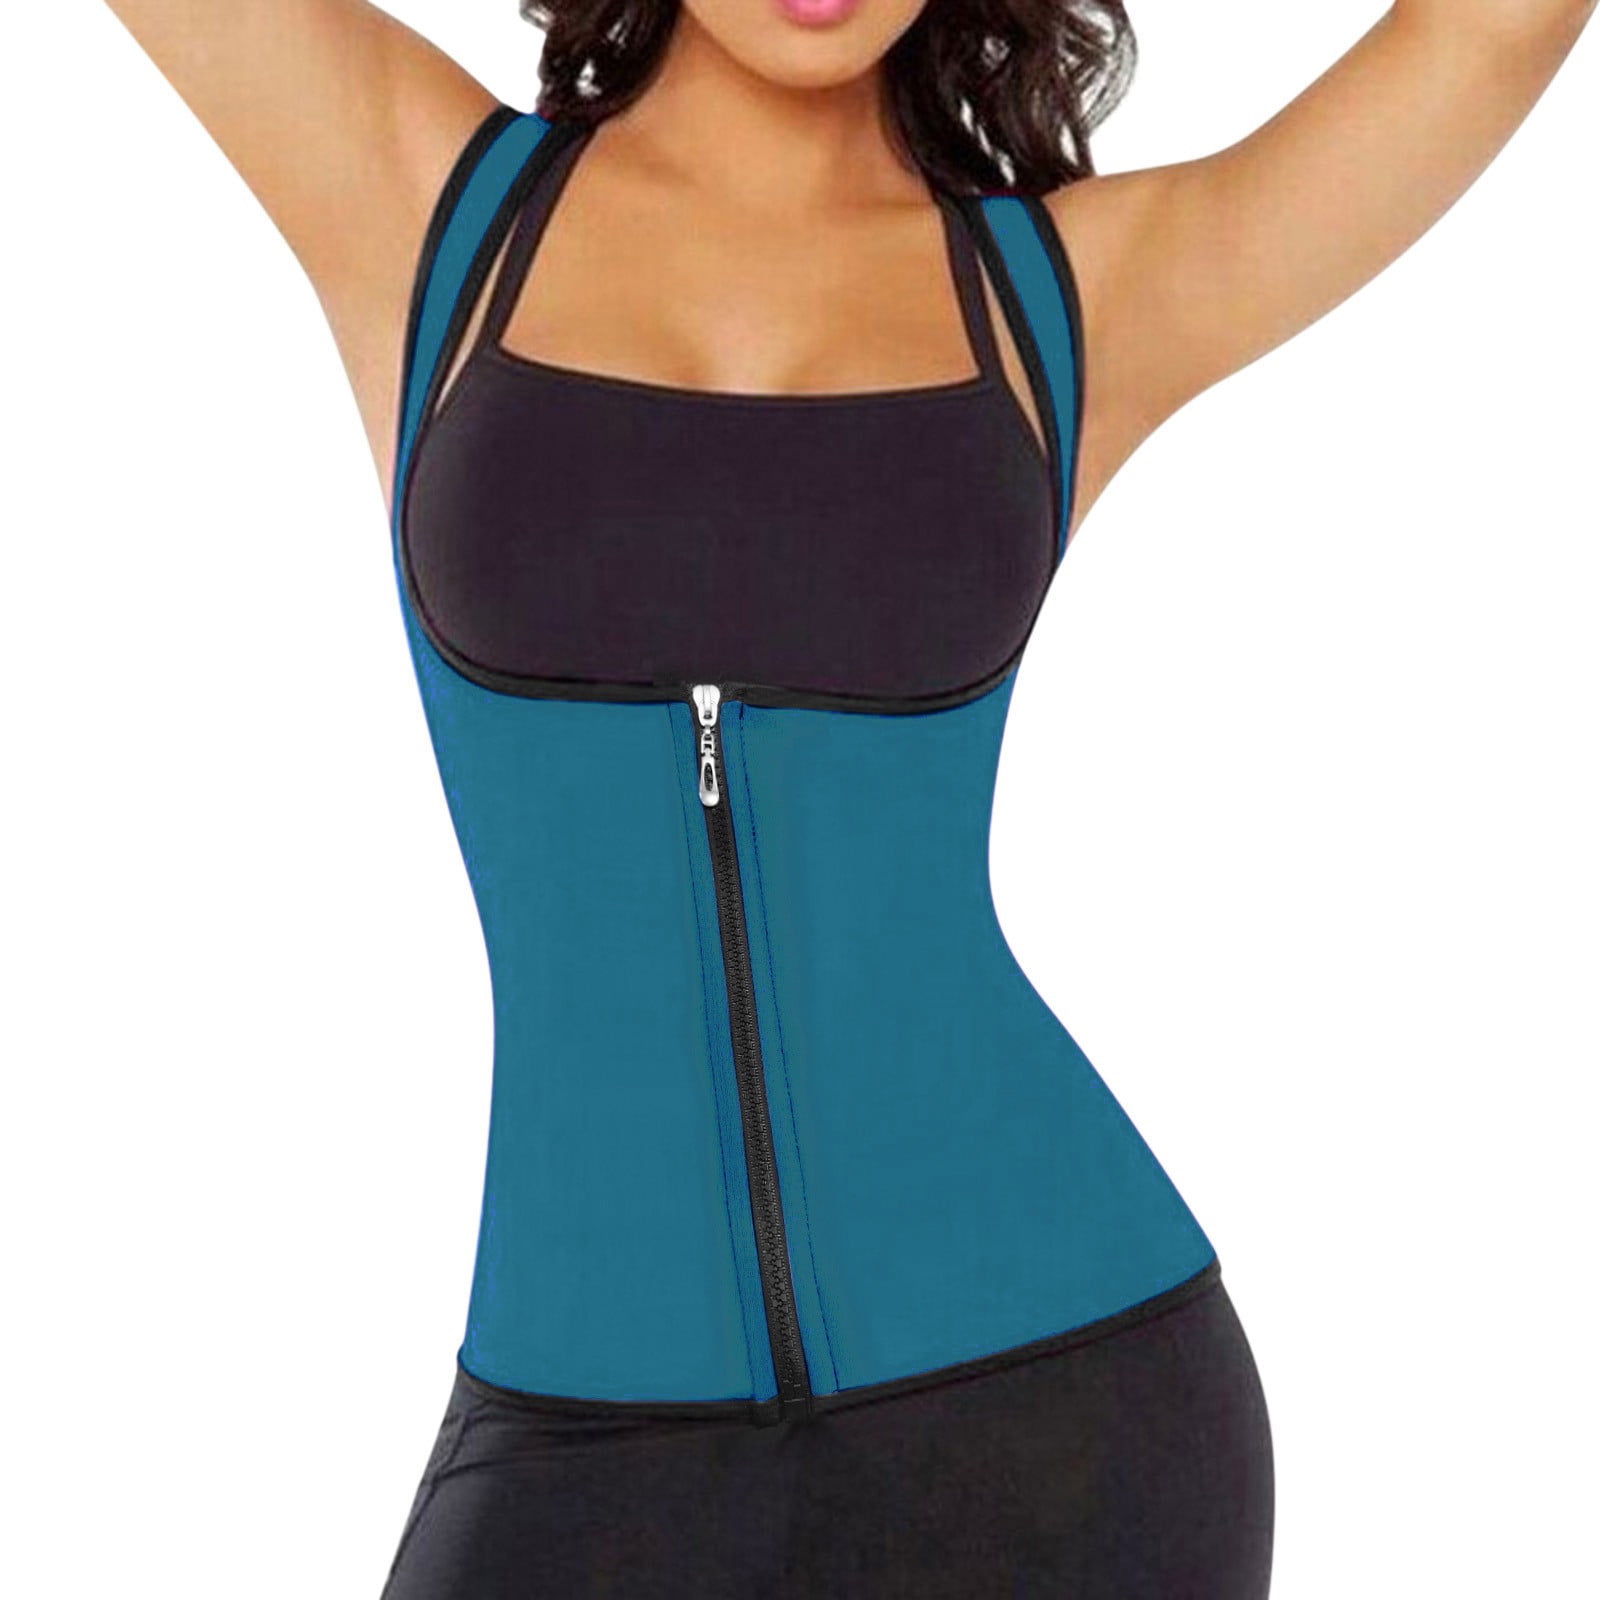 MRULIC shapewear for women tummy control Women Solid Zipper Fitness Corset  Sport Body Shaper Vest Women Waist Trainer Workout Slimming Shaper Black +  L 